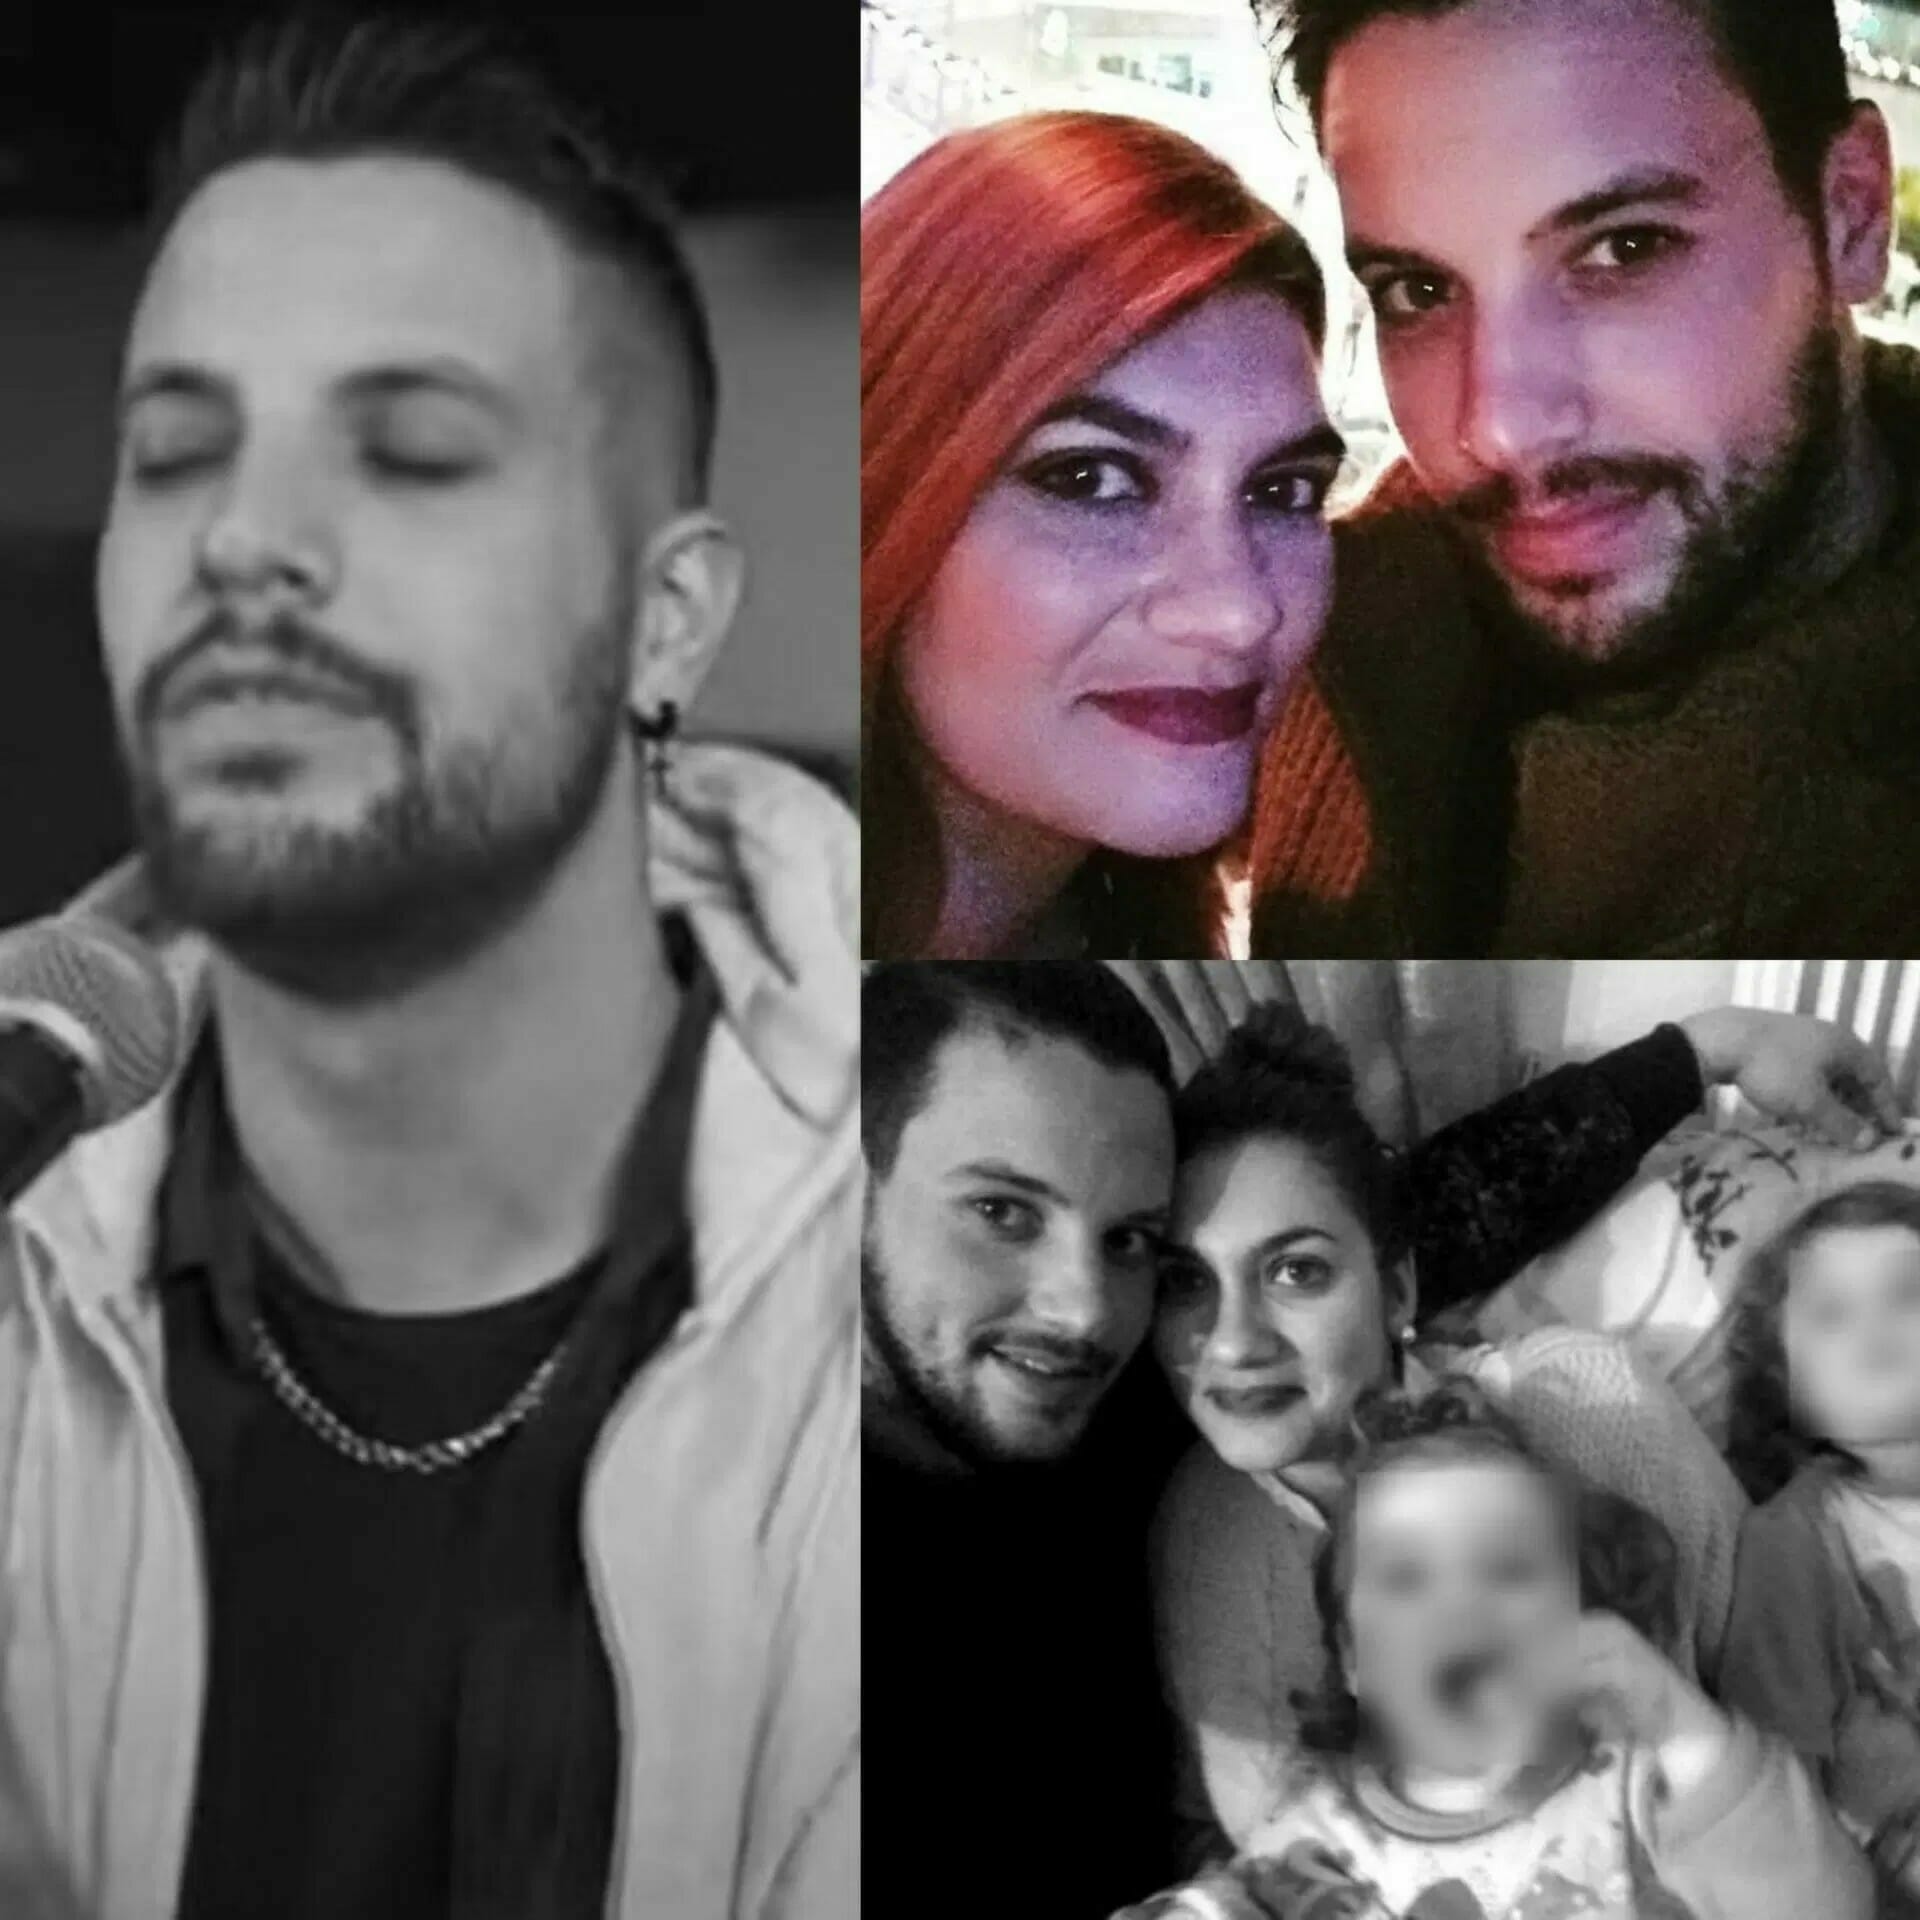 Επιβεβαίωση iCIAO: Ο Μάνος Δασκαλάκης είχε δηλώσει συμμετοχή στο X-Factor